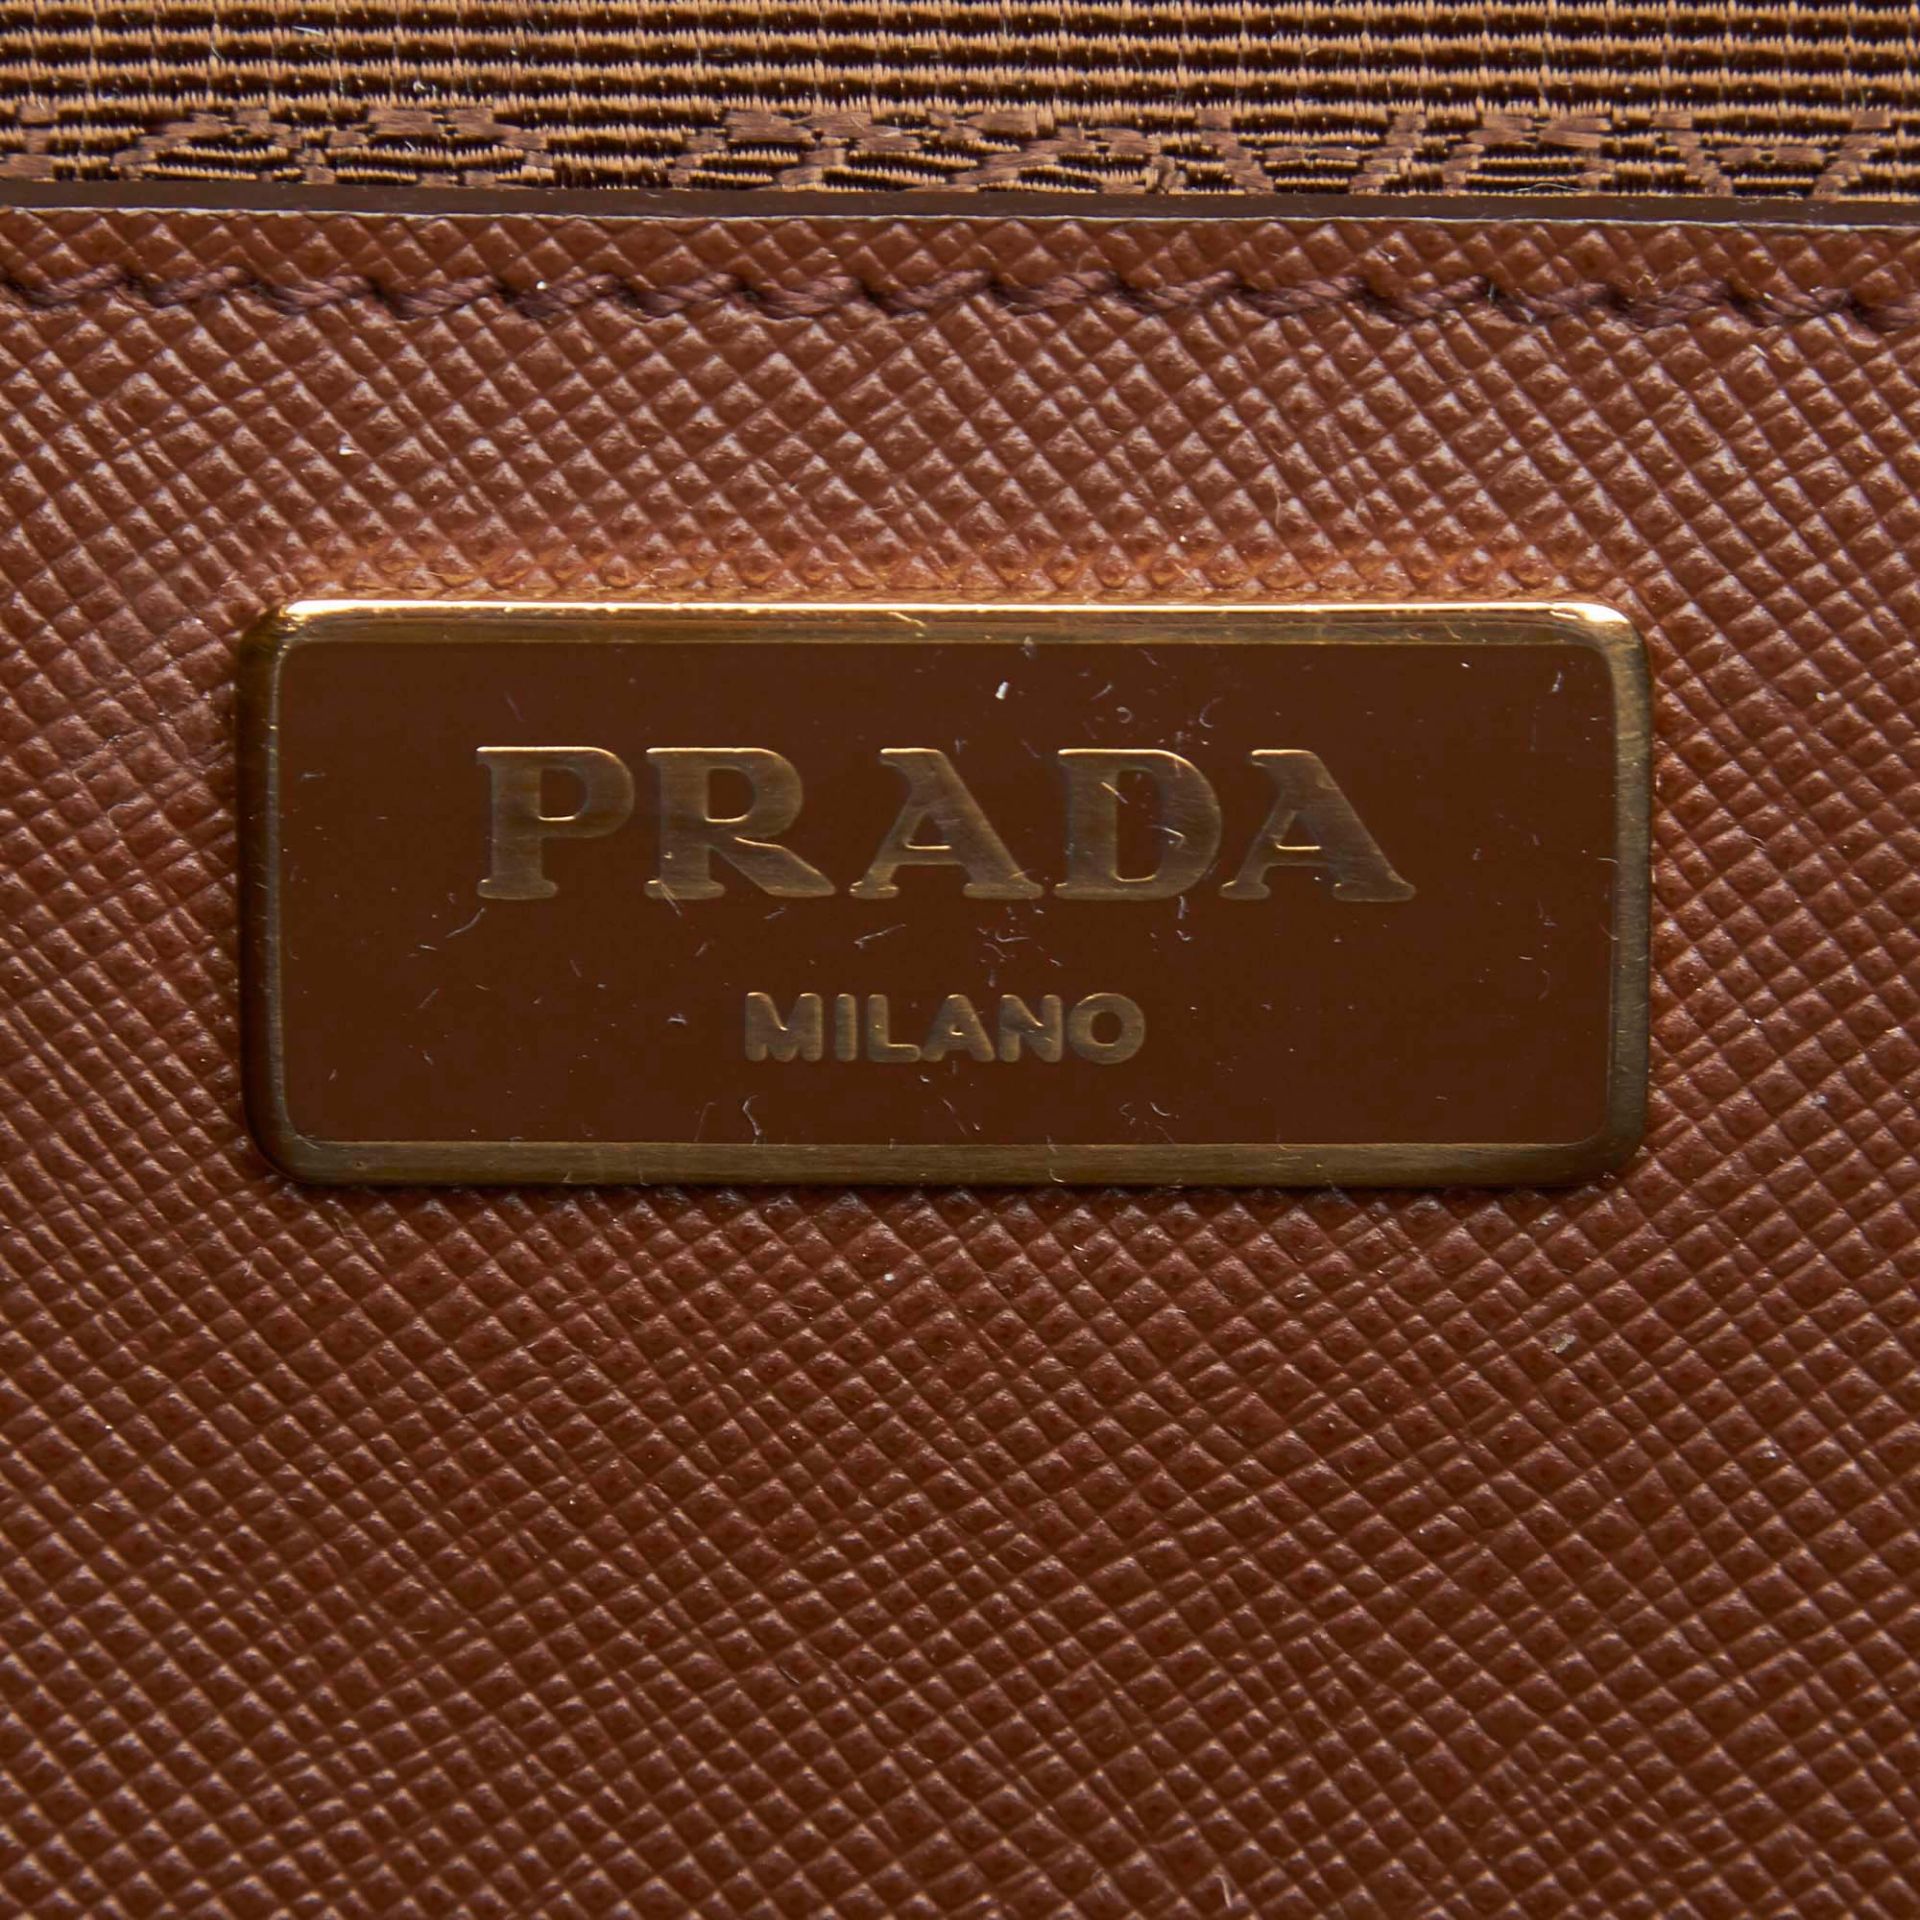 Prada Saffiano Leather Galleria Handbag - Image 9 of 10